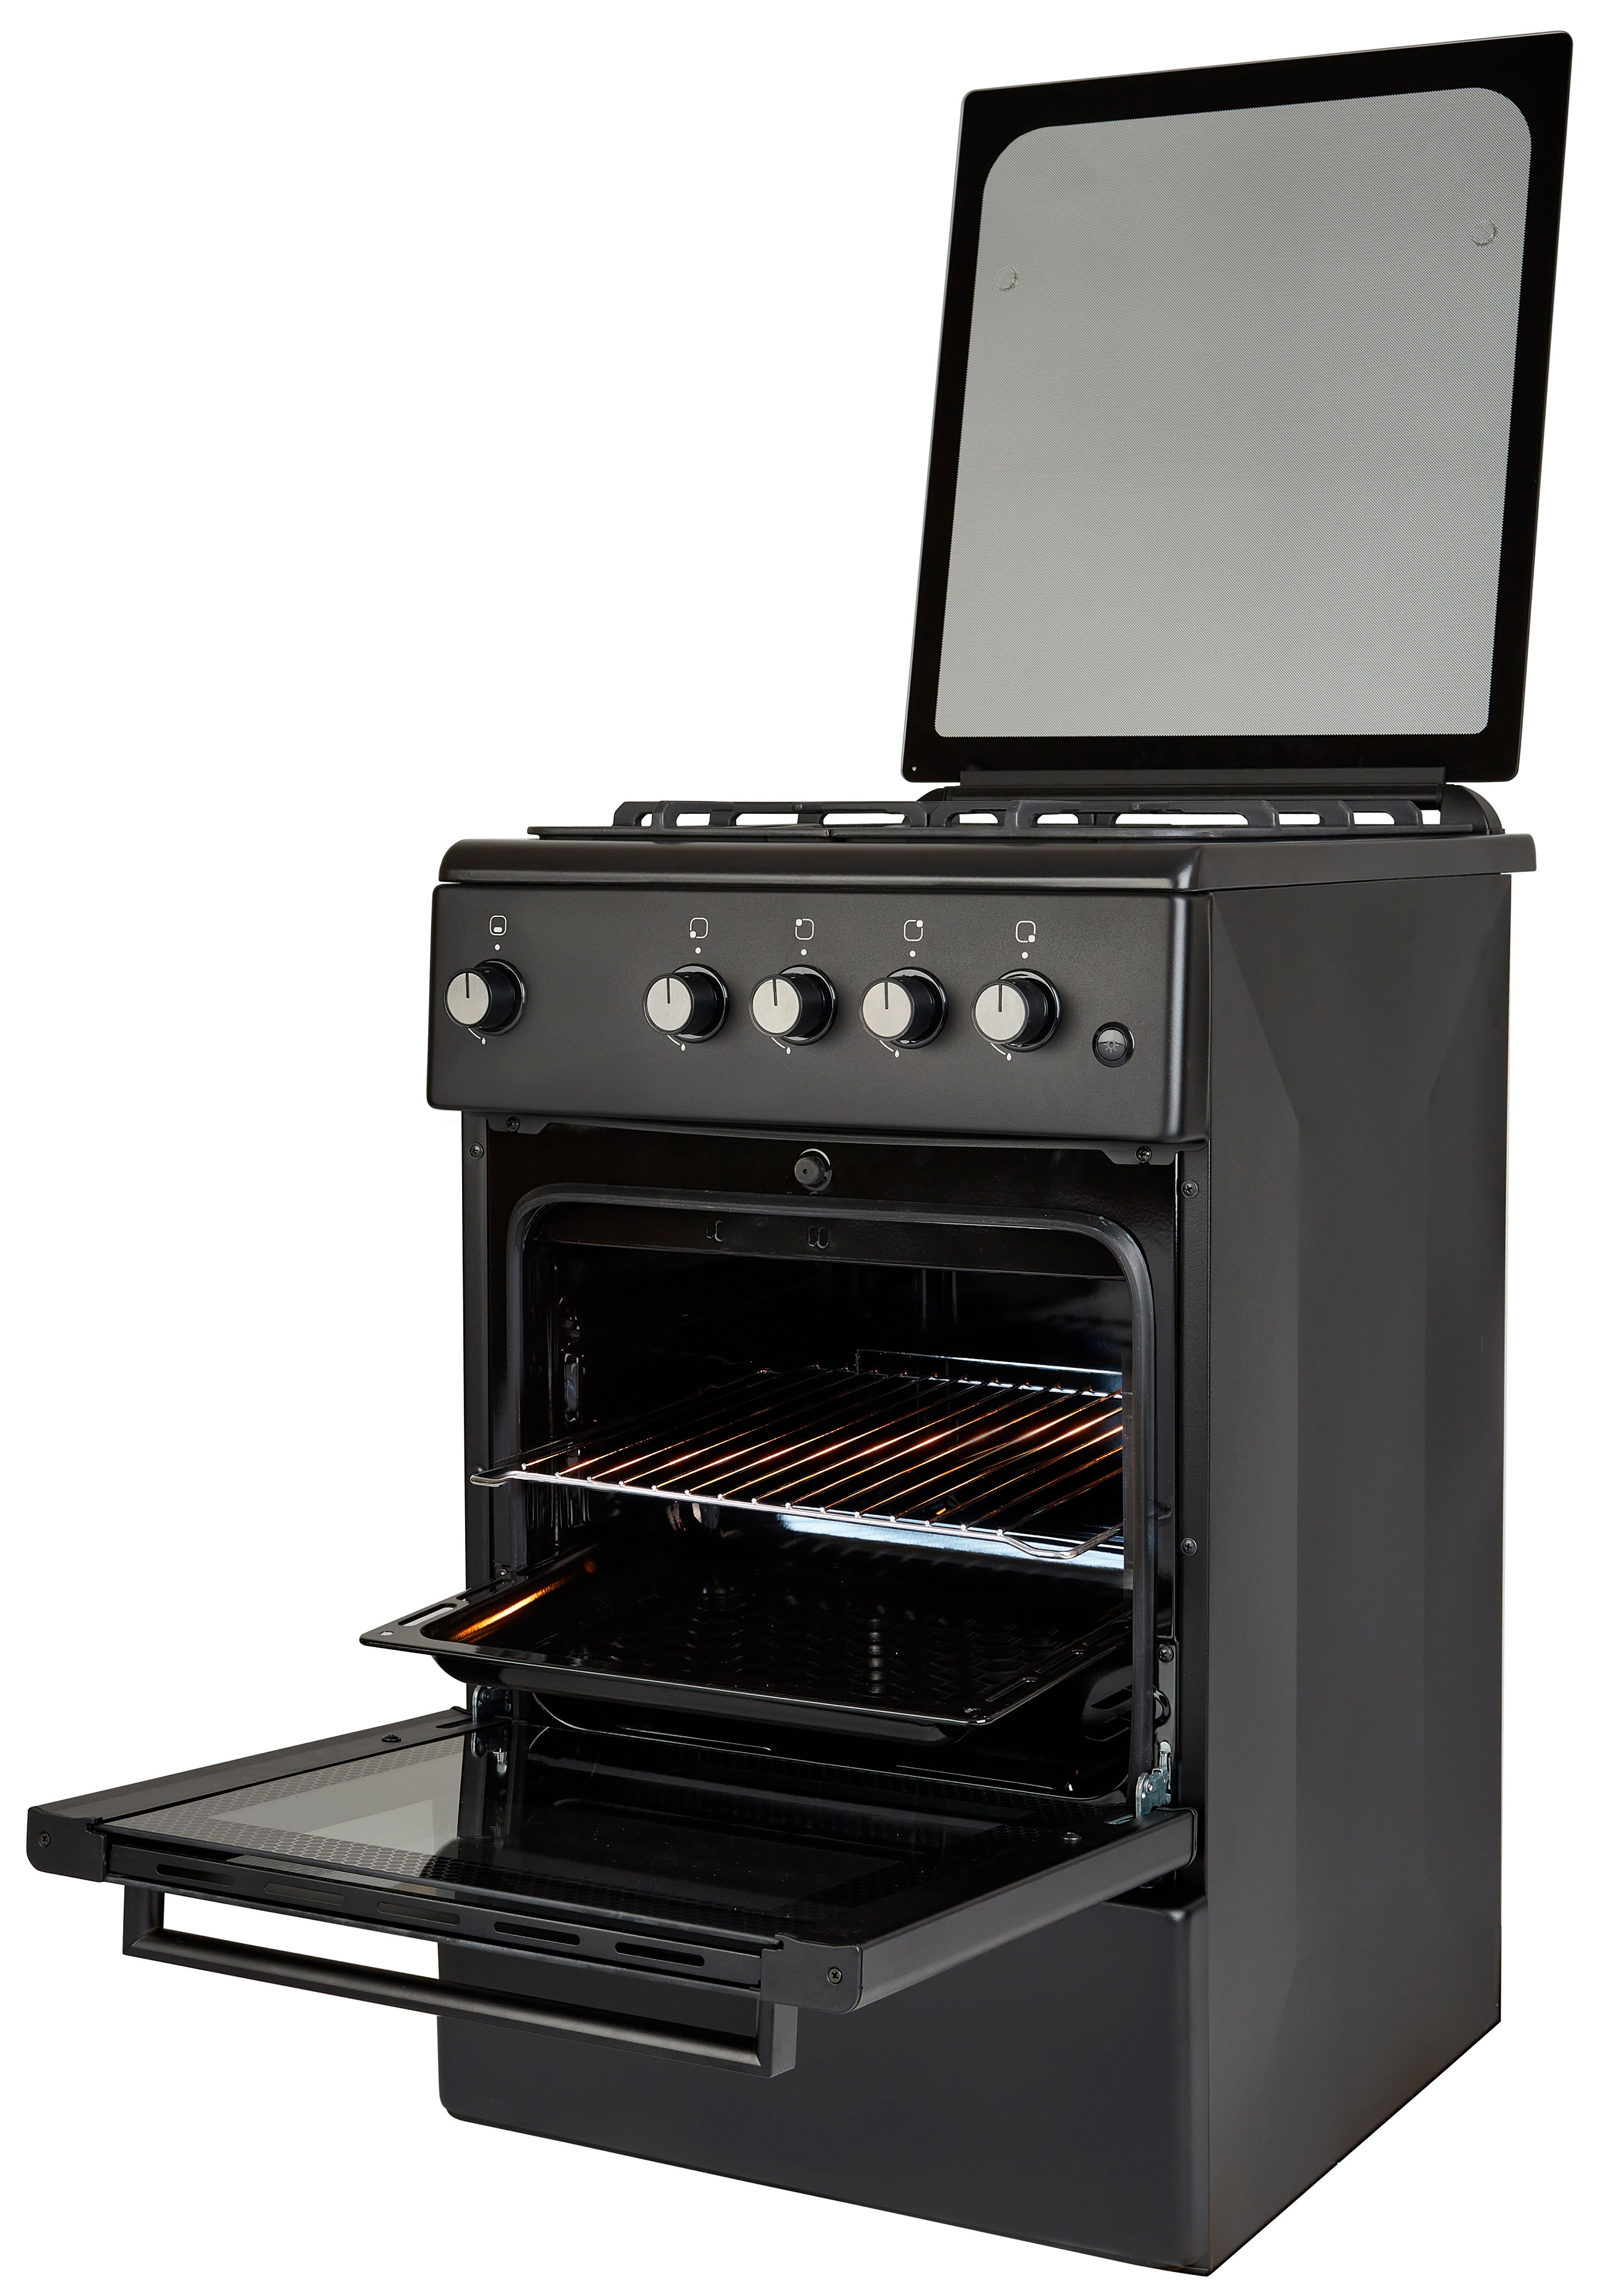 Кухонная плита Fiesta G 5403 SACDcG-BL отзывы - изображения 5